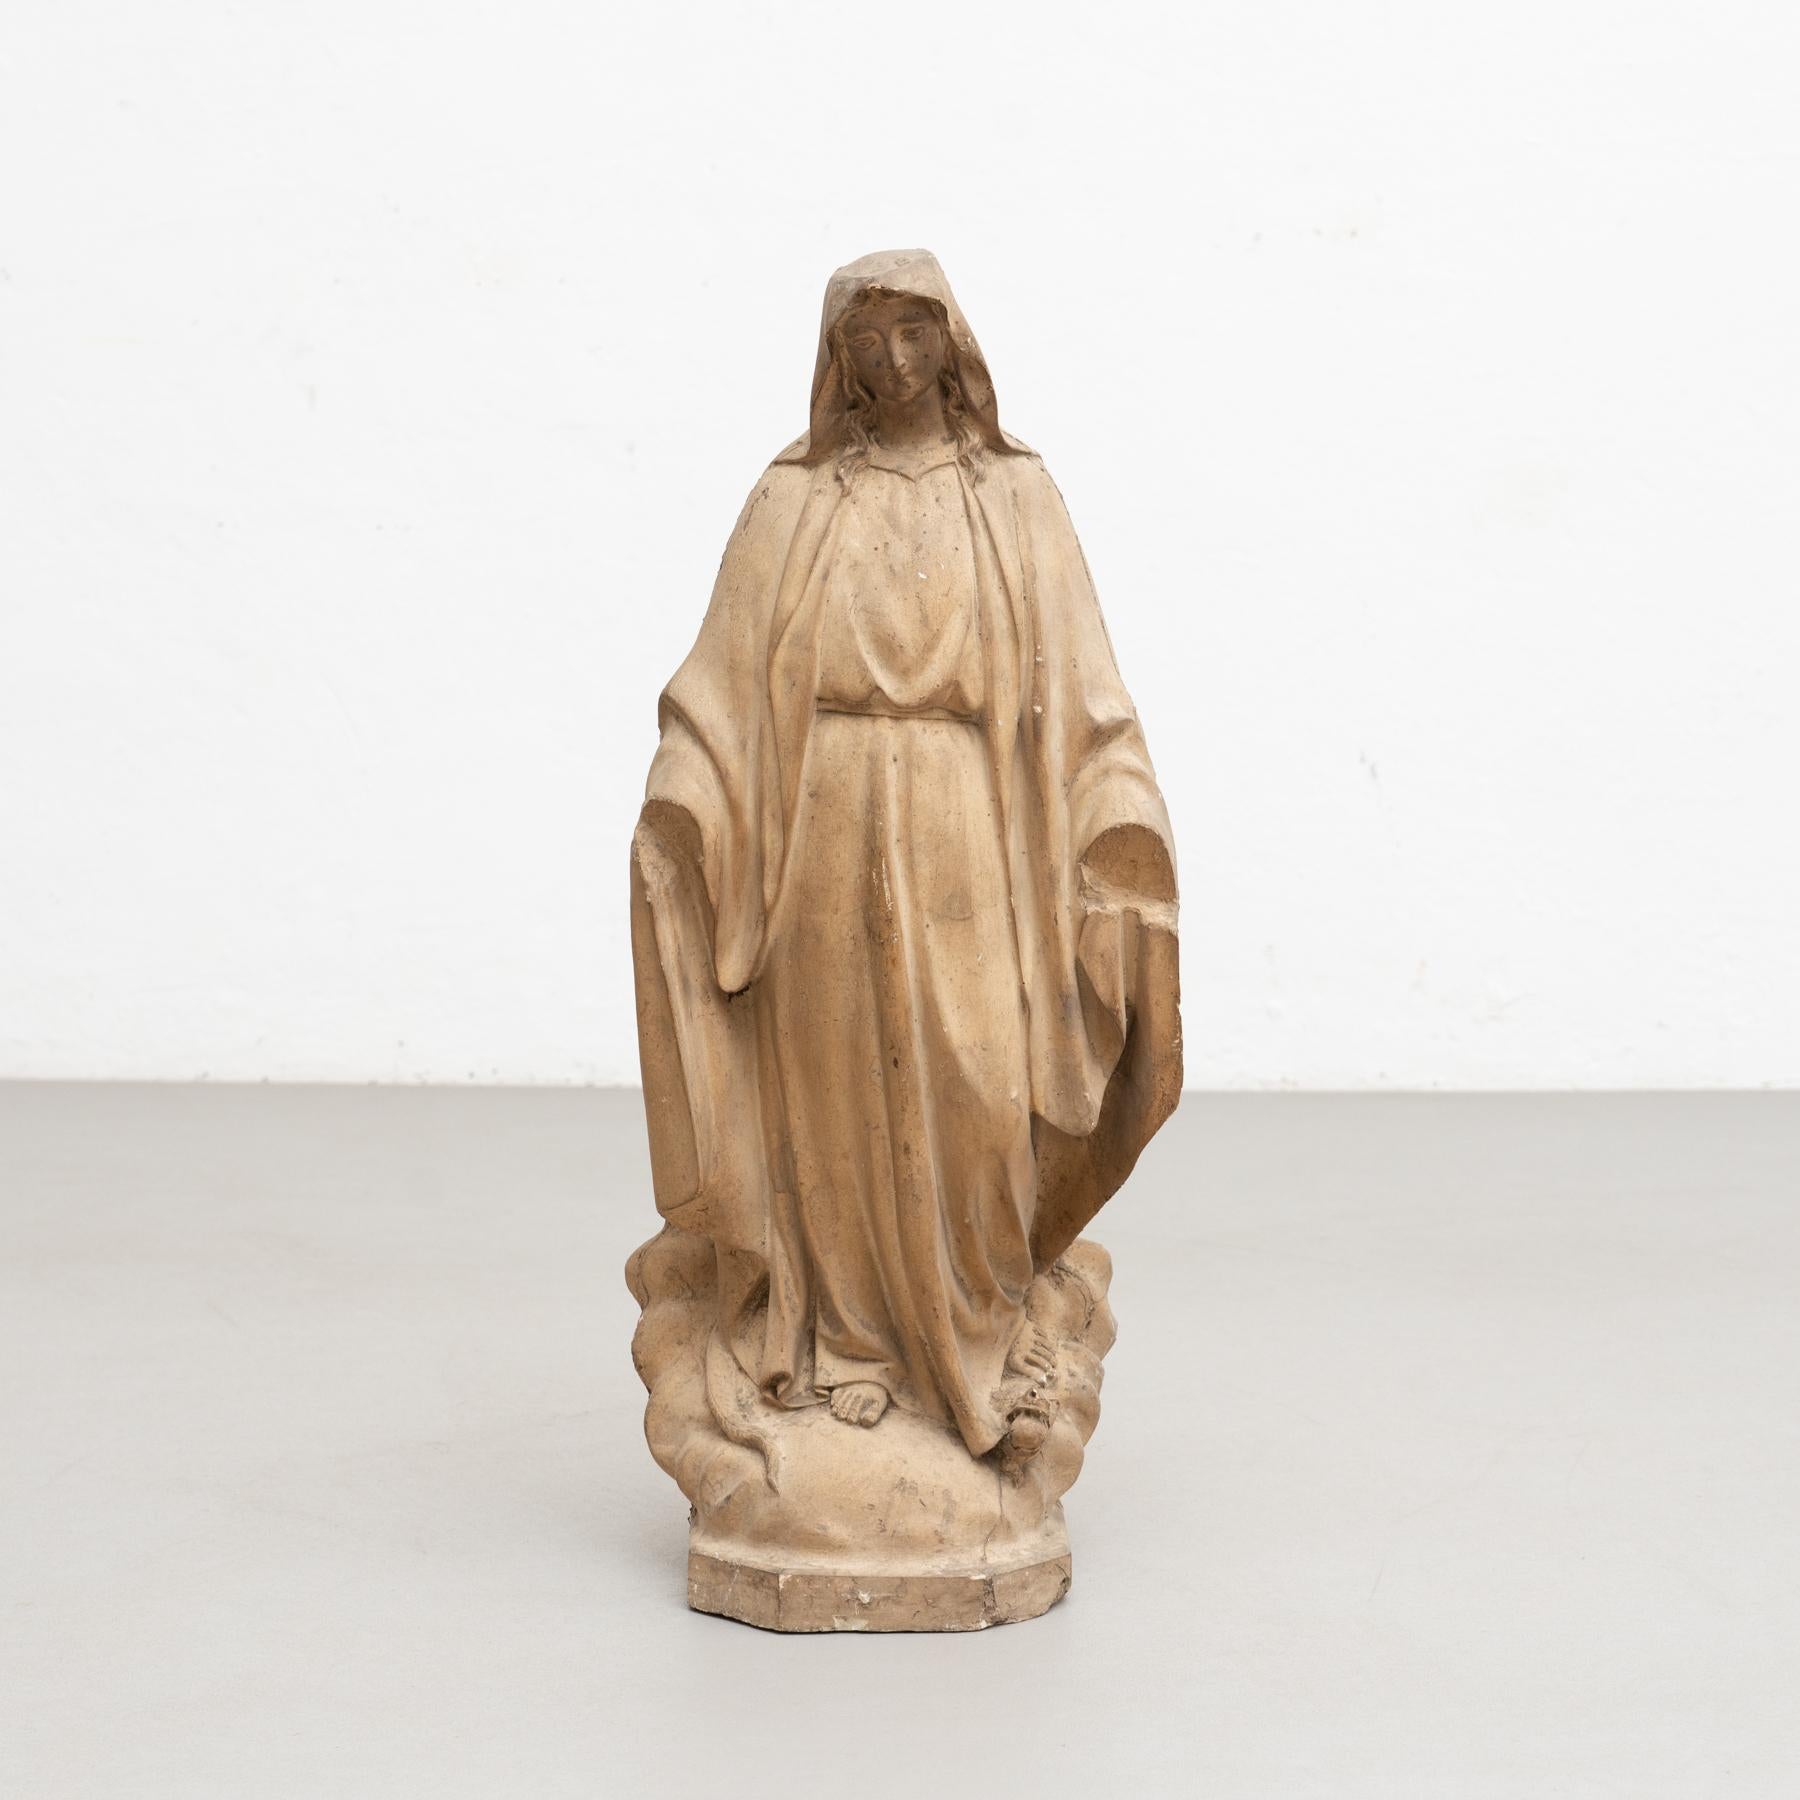 Figure religieuse traditionnelle en plâtre représentant une vierge.

Fabriqué dans un atelier catalan traditionnel à Olot, en Espagne, vers 1950.

En état d'origine, avec une usure mineure conforme à l'âge et à l'utilisation, préservant une